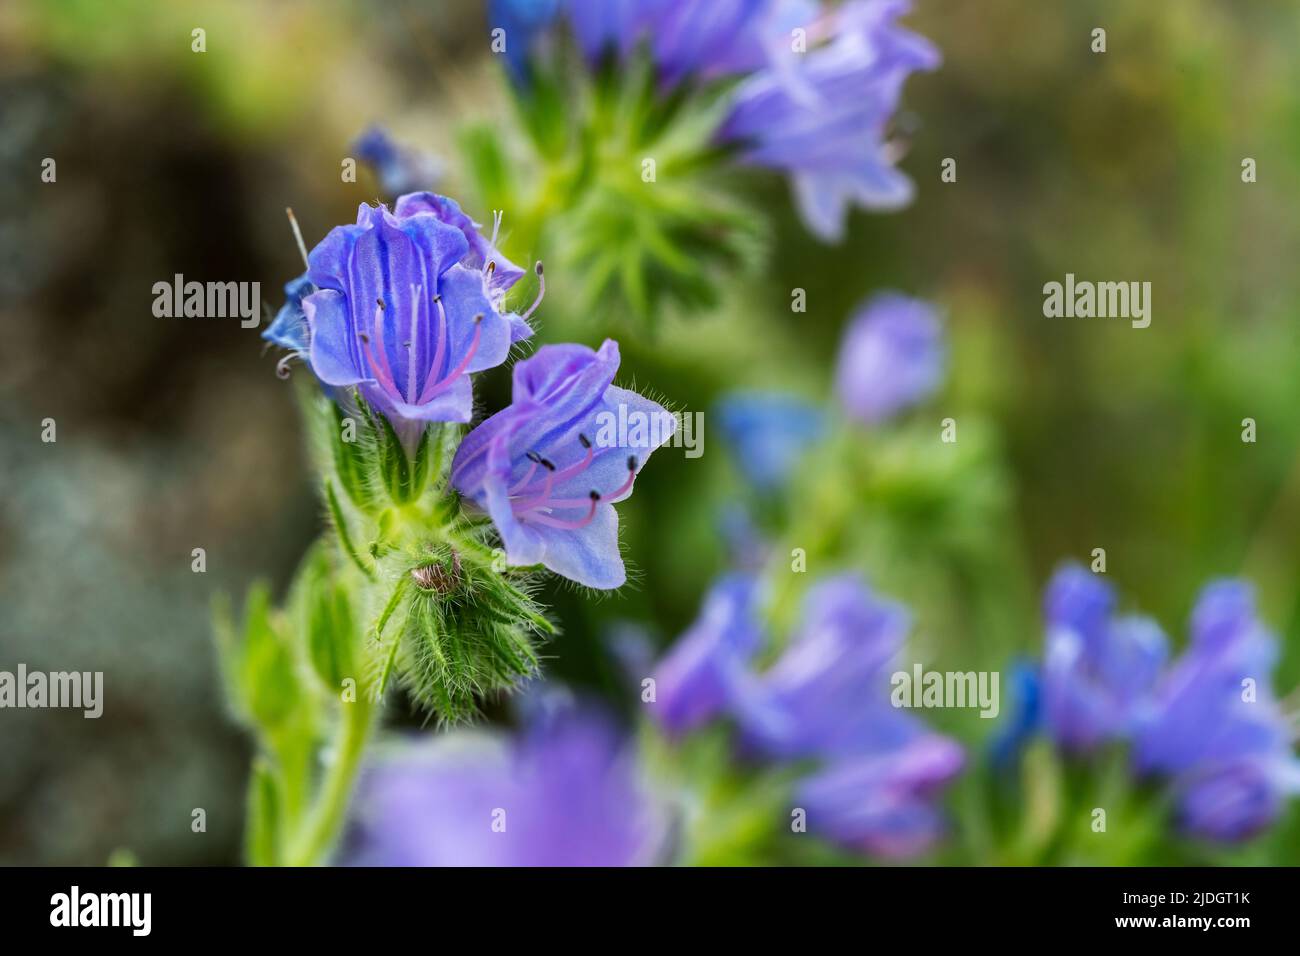 Macro photo de fleur bleue melliferious d'Echium plantagineum communément connu sous le nom de bugloss de viper et de mauvaise herbe bleue. Mise au point sélective. Banque D'Images